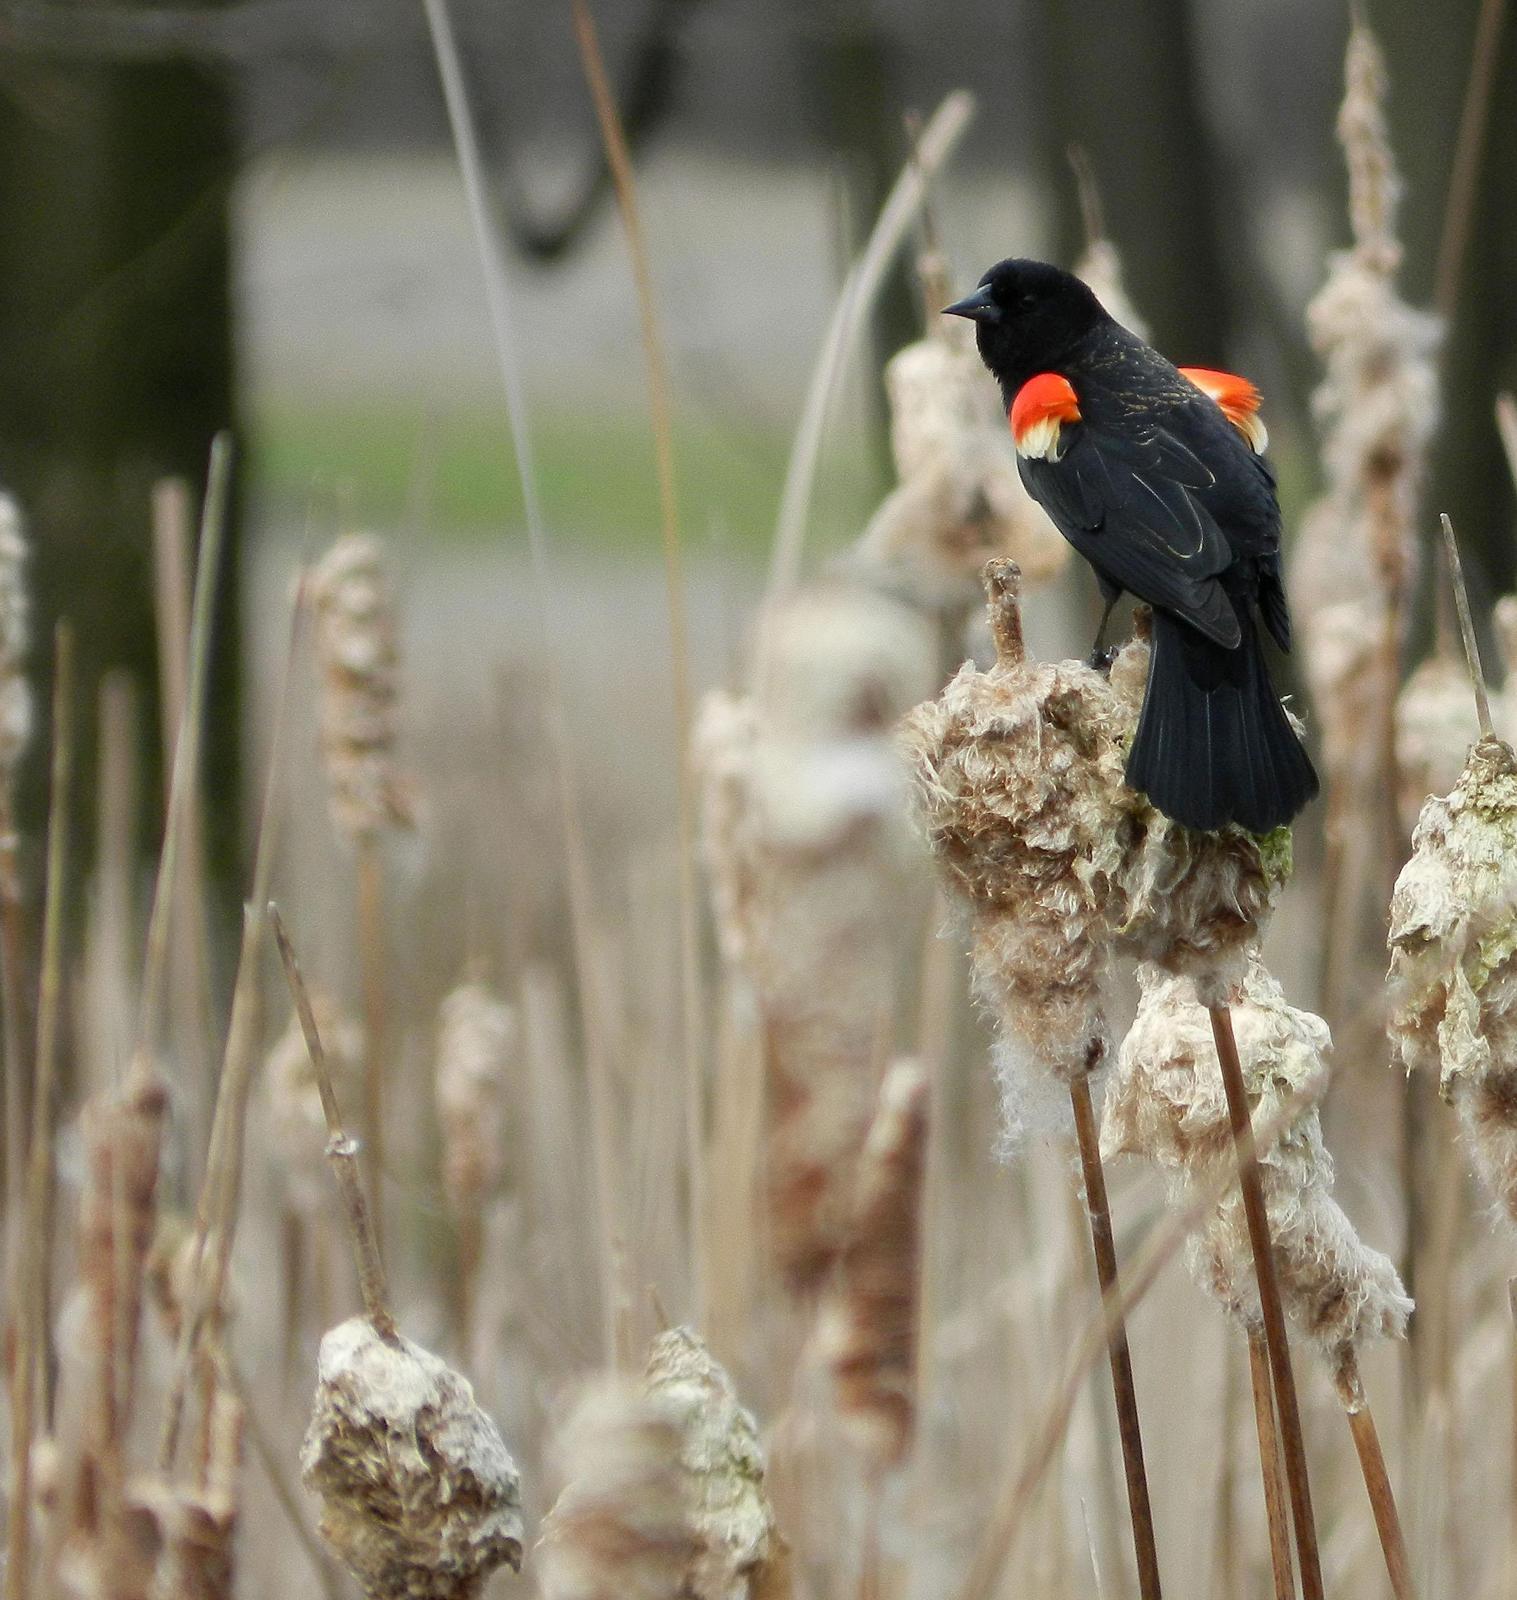 Red-winged Blackbird Photo by Mark Rozmarynowycz